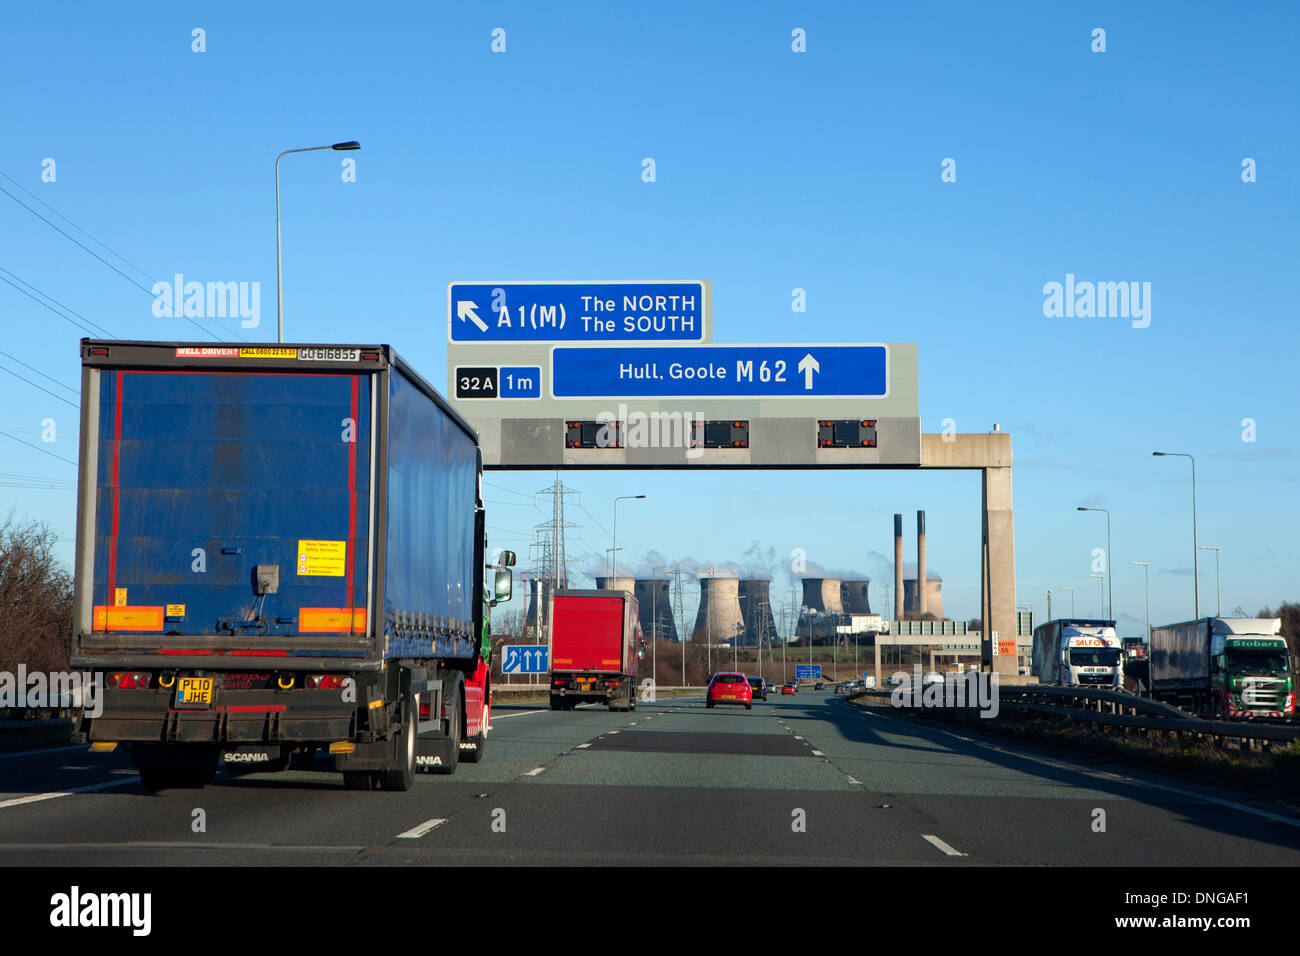 Autostrada M62 nel West Yorkshire tettuccio di segnaletica stradale Foto Stock